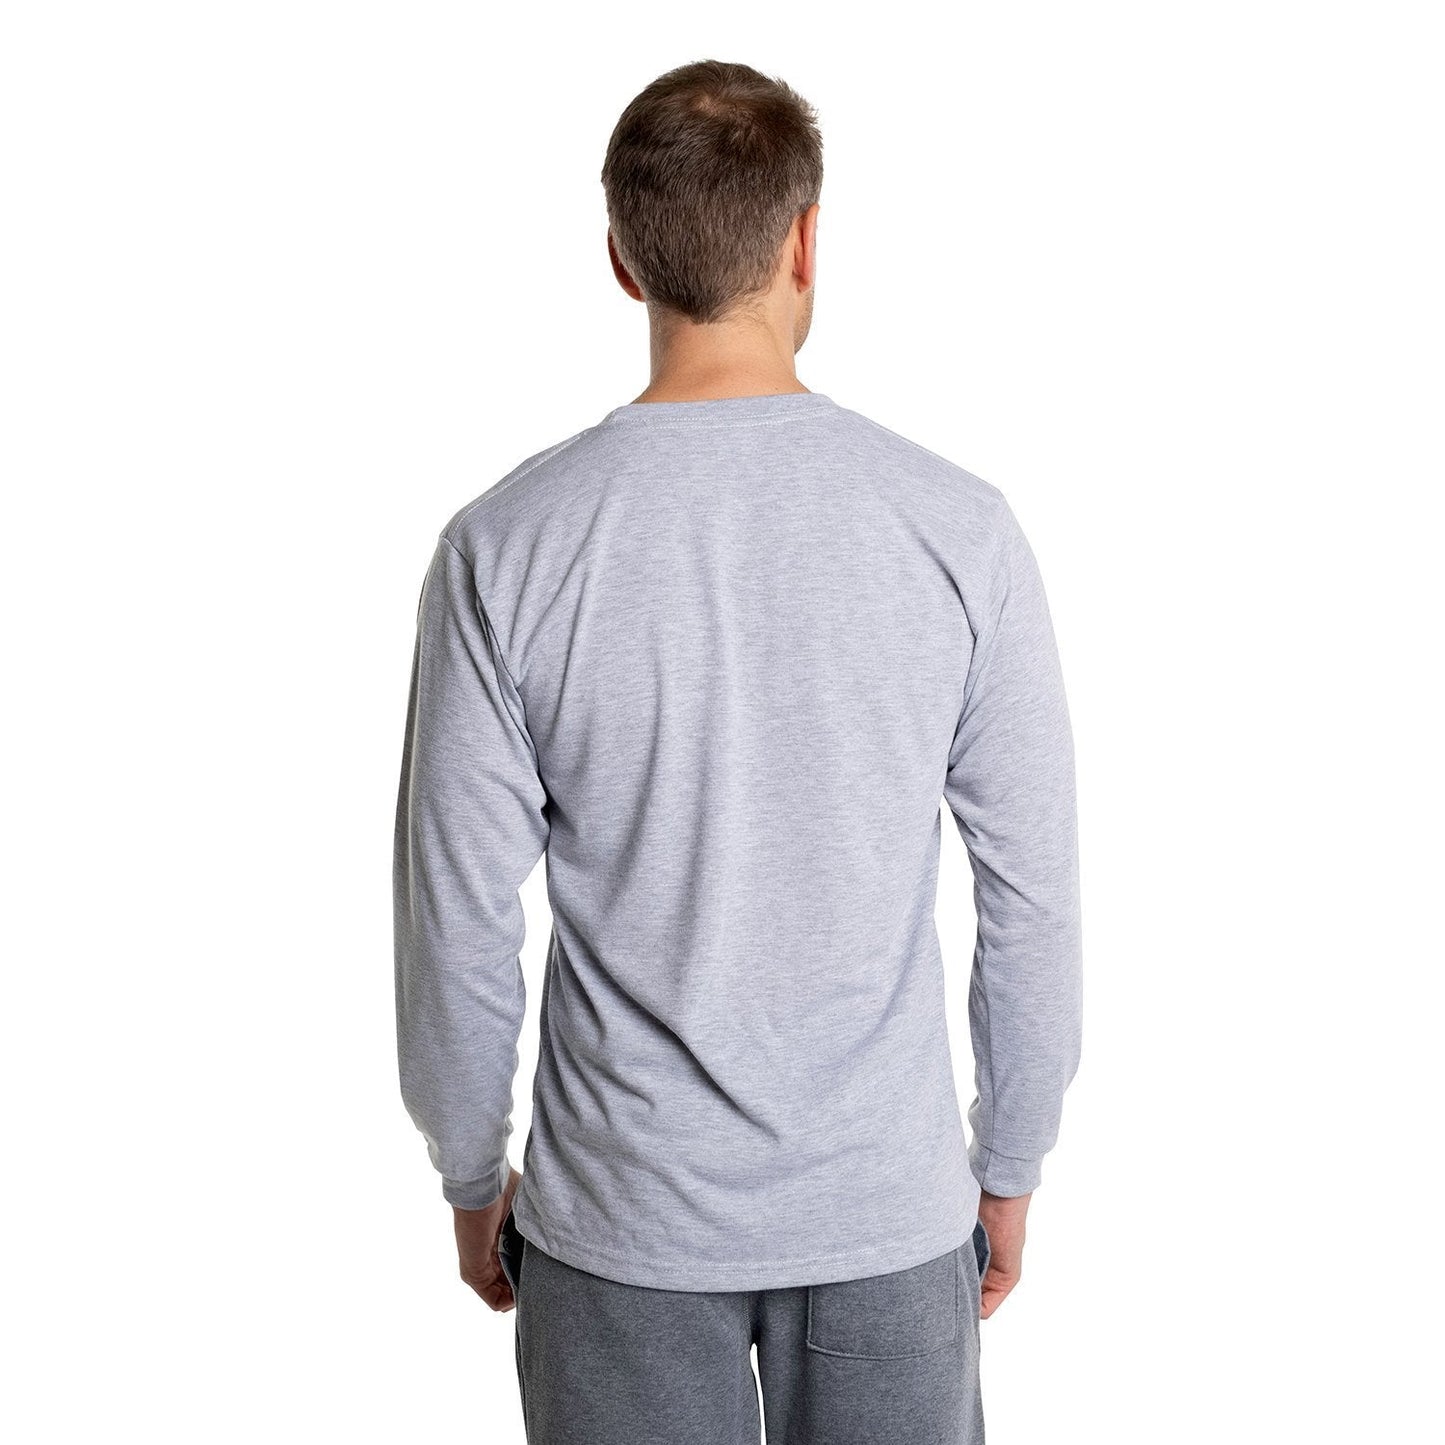 Men's SpunSoft Tech Long Sleeve Shirt